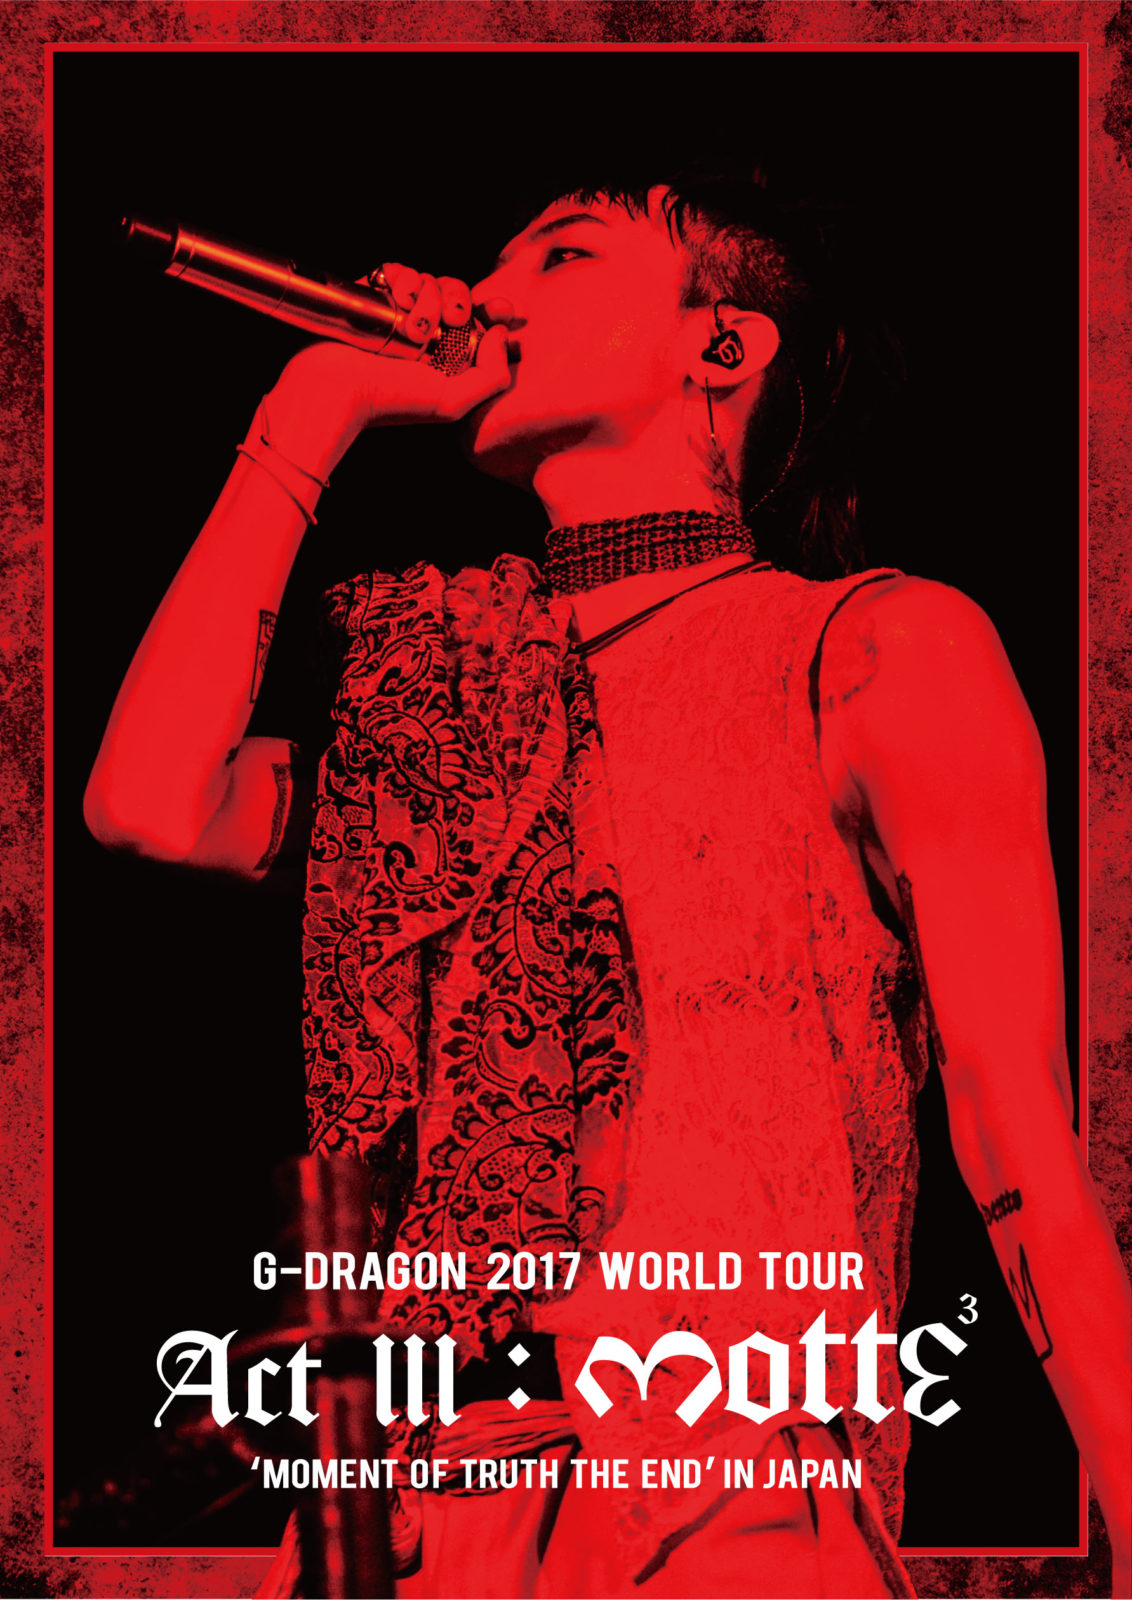 BIGBANGのリーダー・G-DRAGONのソロワールドツアー東​京ドーム公演映像作品が初登場1位を獲得サムネイル画像!